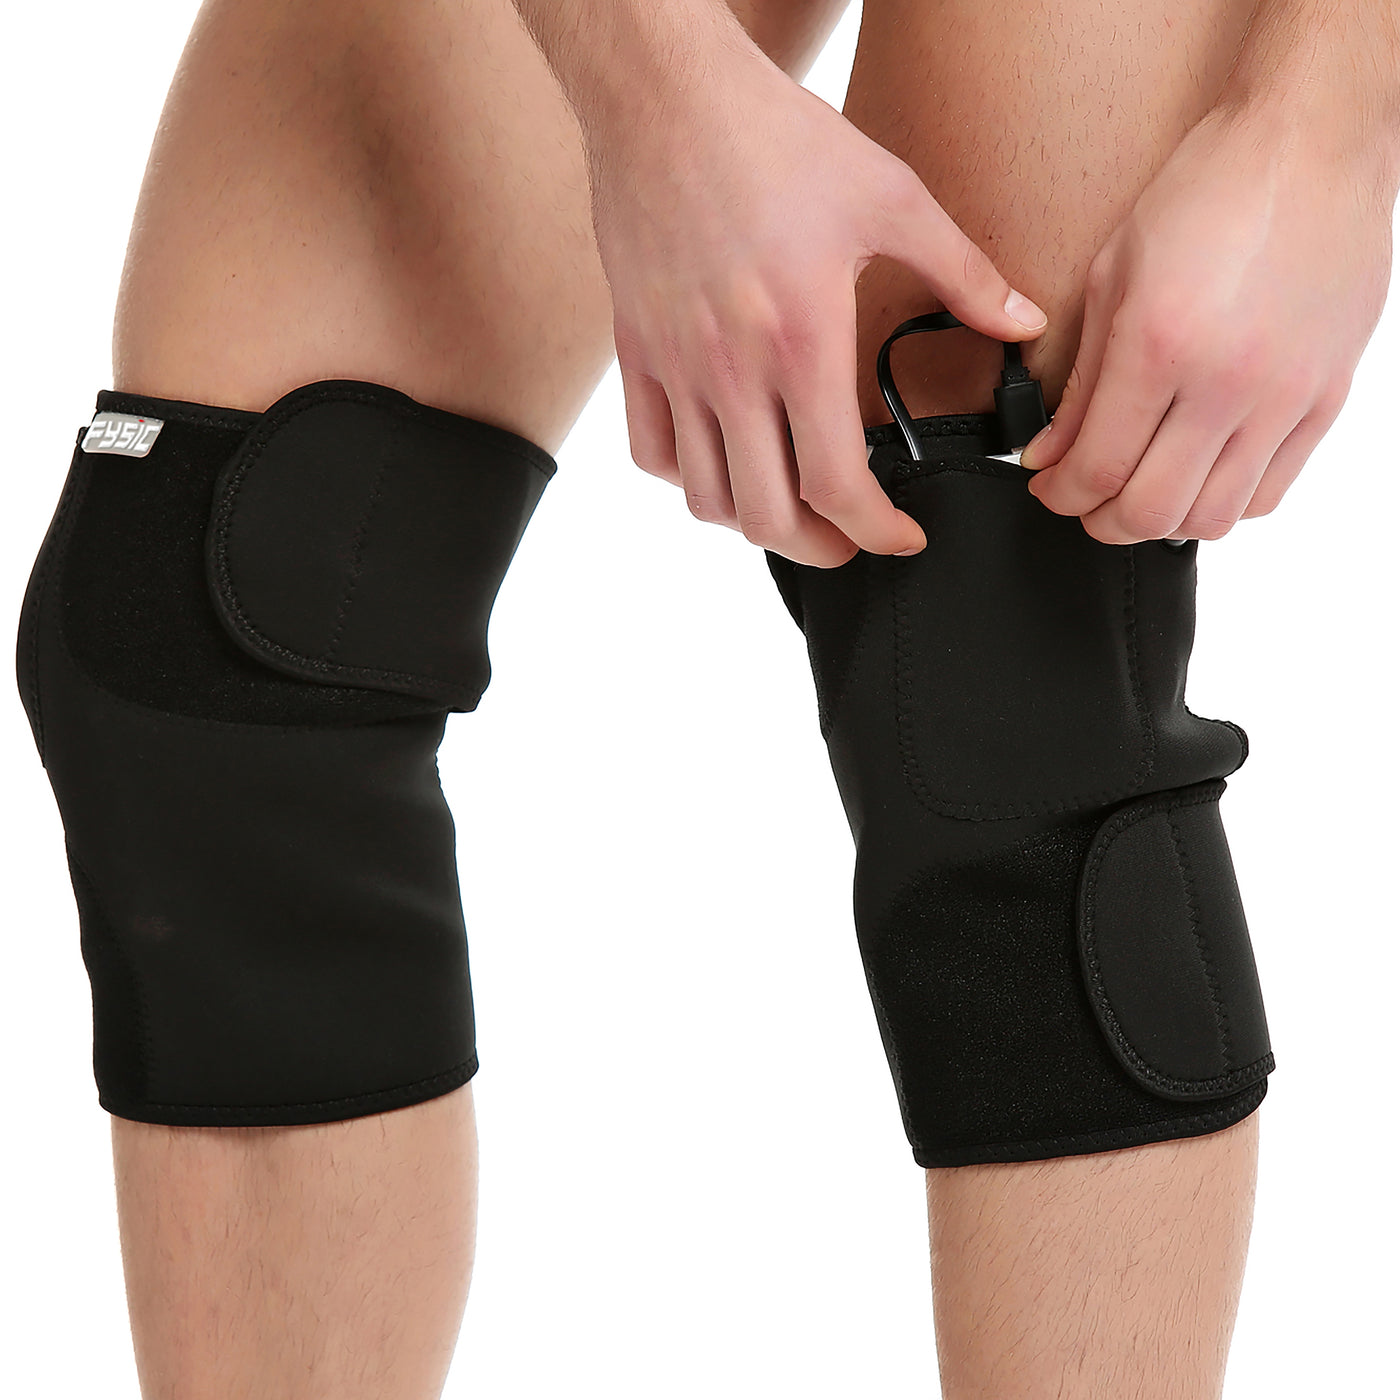 Fysic FHP-180L - Kabellose Wärmebandage für das Knie, links